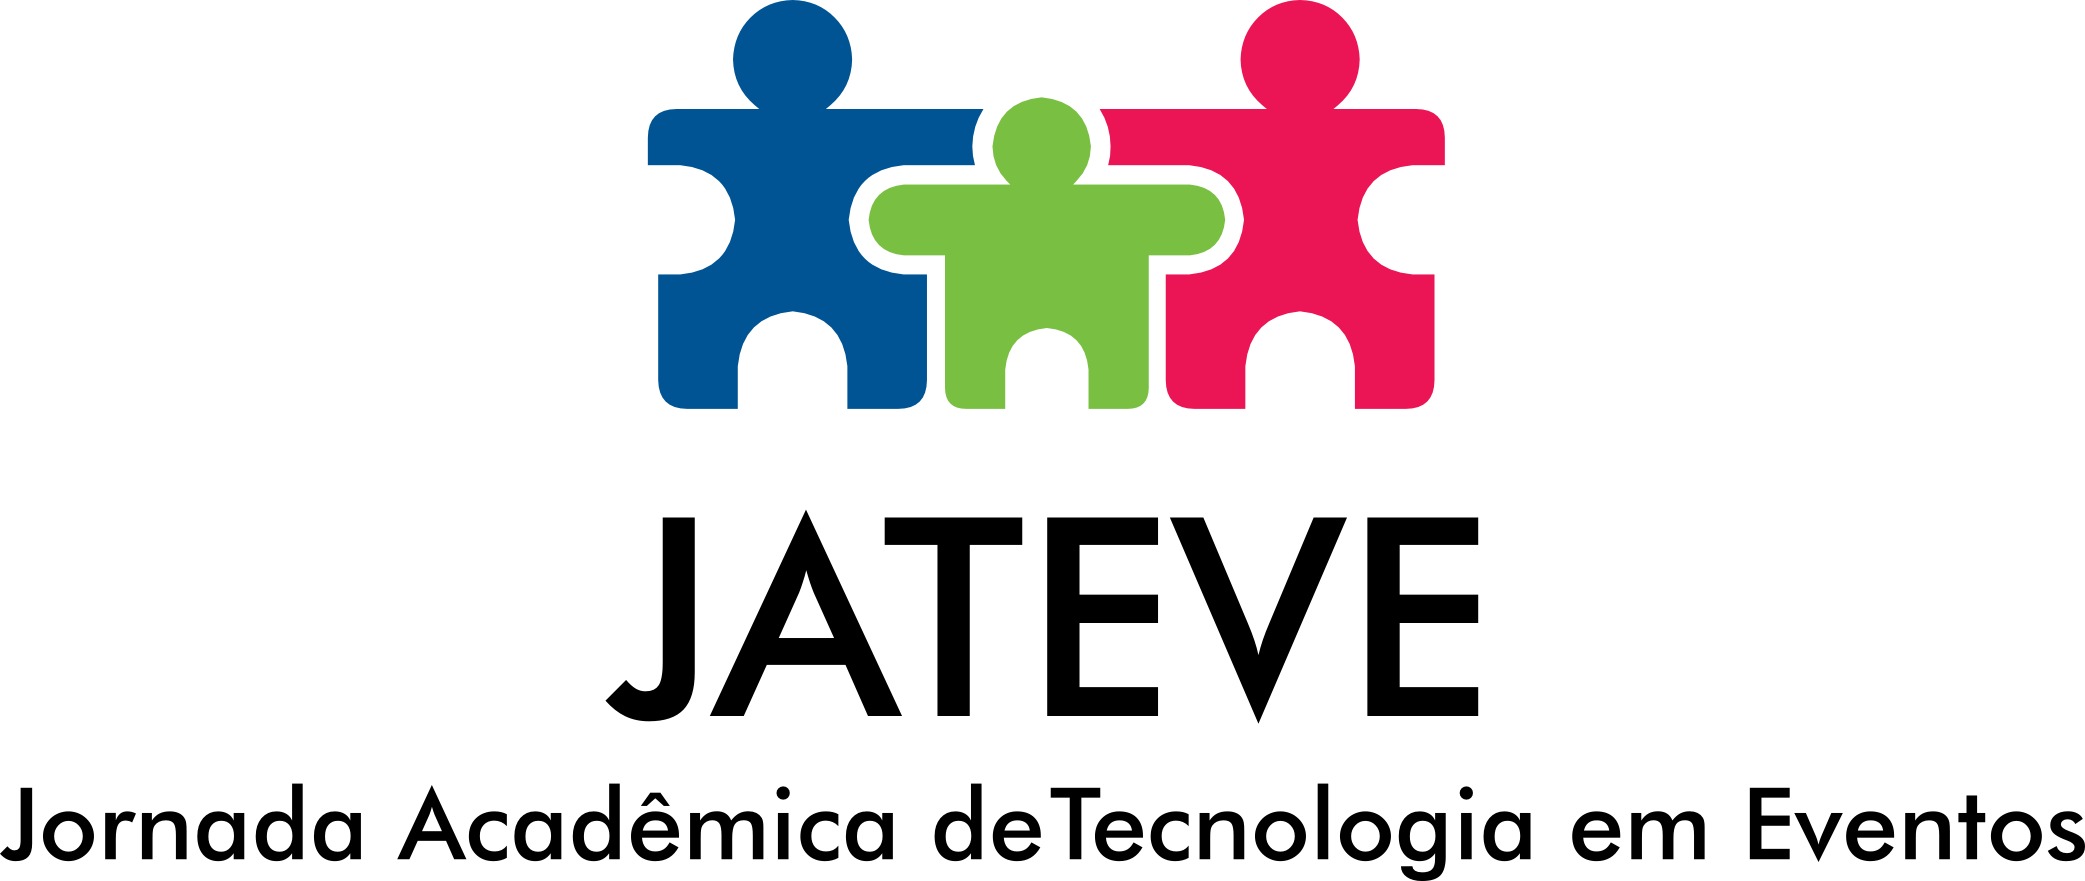 JATEVE - Jornada Acadêmica de Tecnologia em Eventos